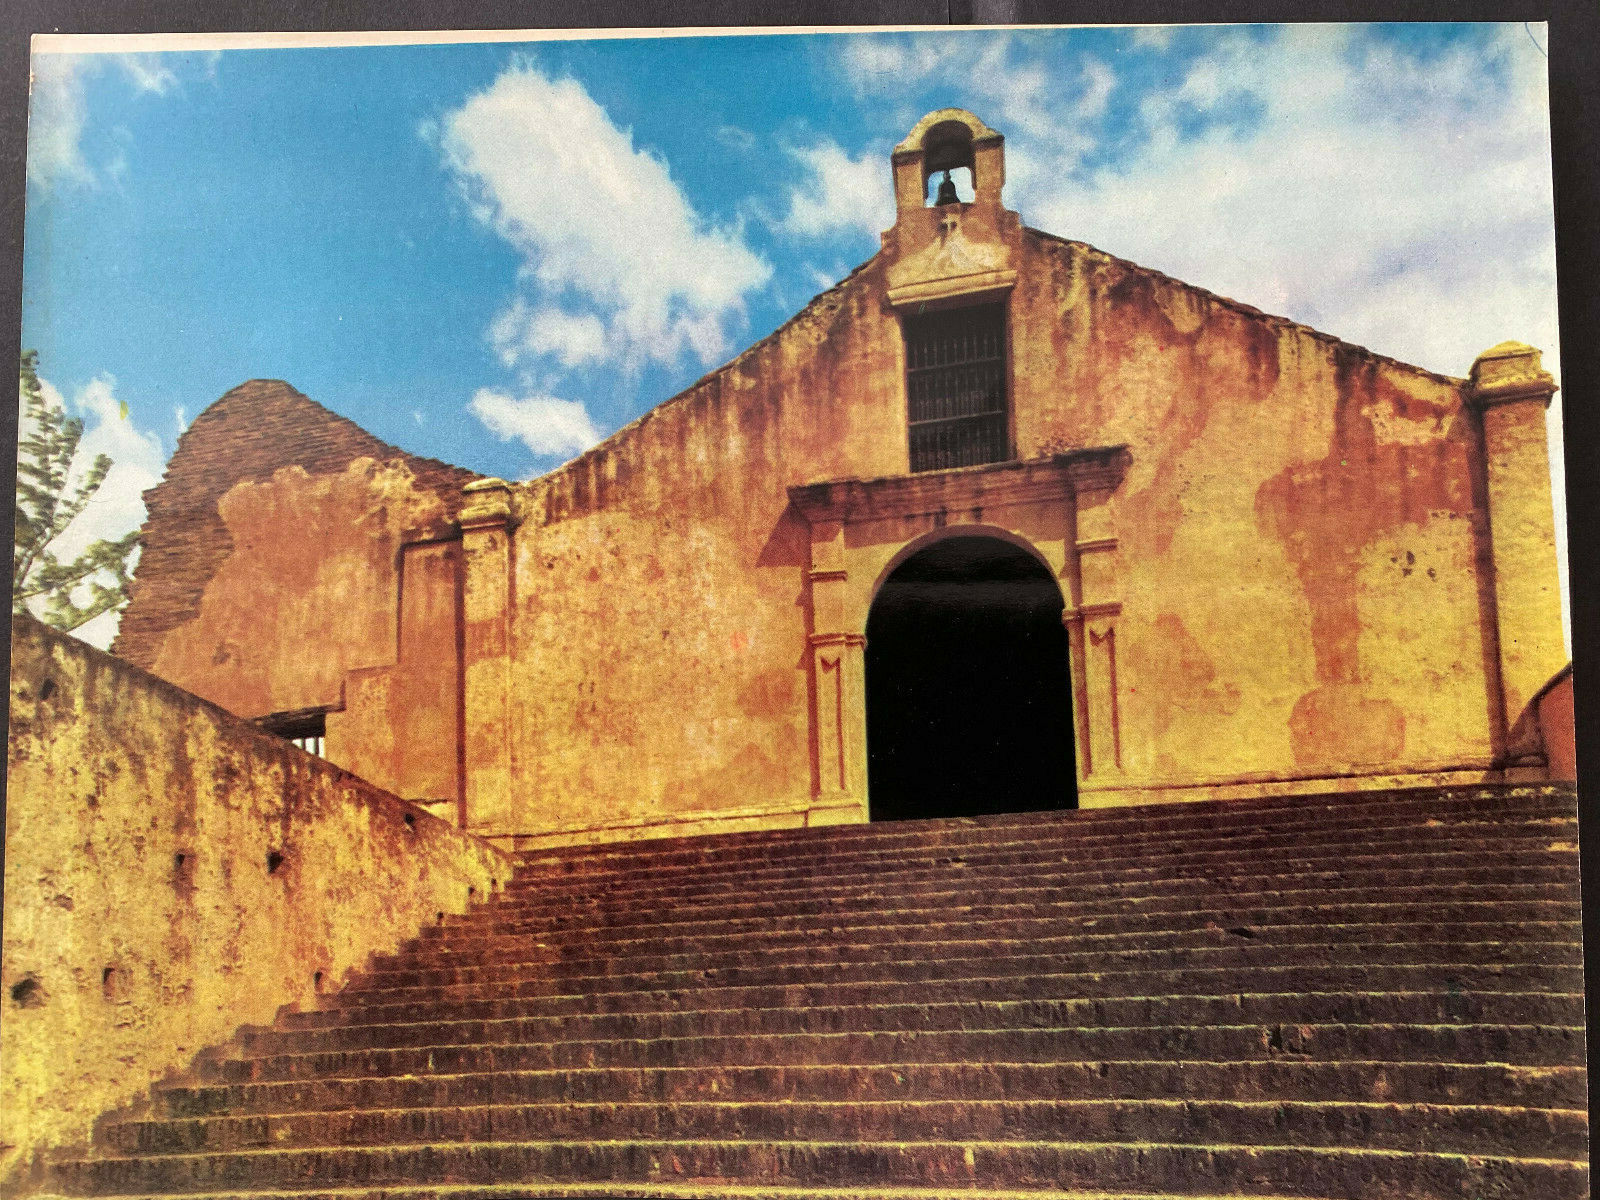 Puerto Rico 1970s, PORTA COELI SAN GERMAN, Foto Fachada Iglesia, ICP,  